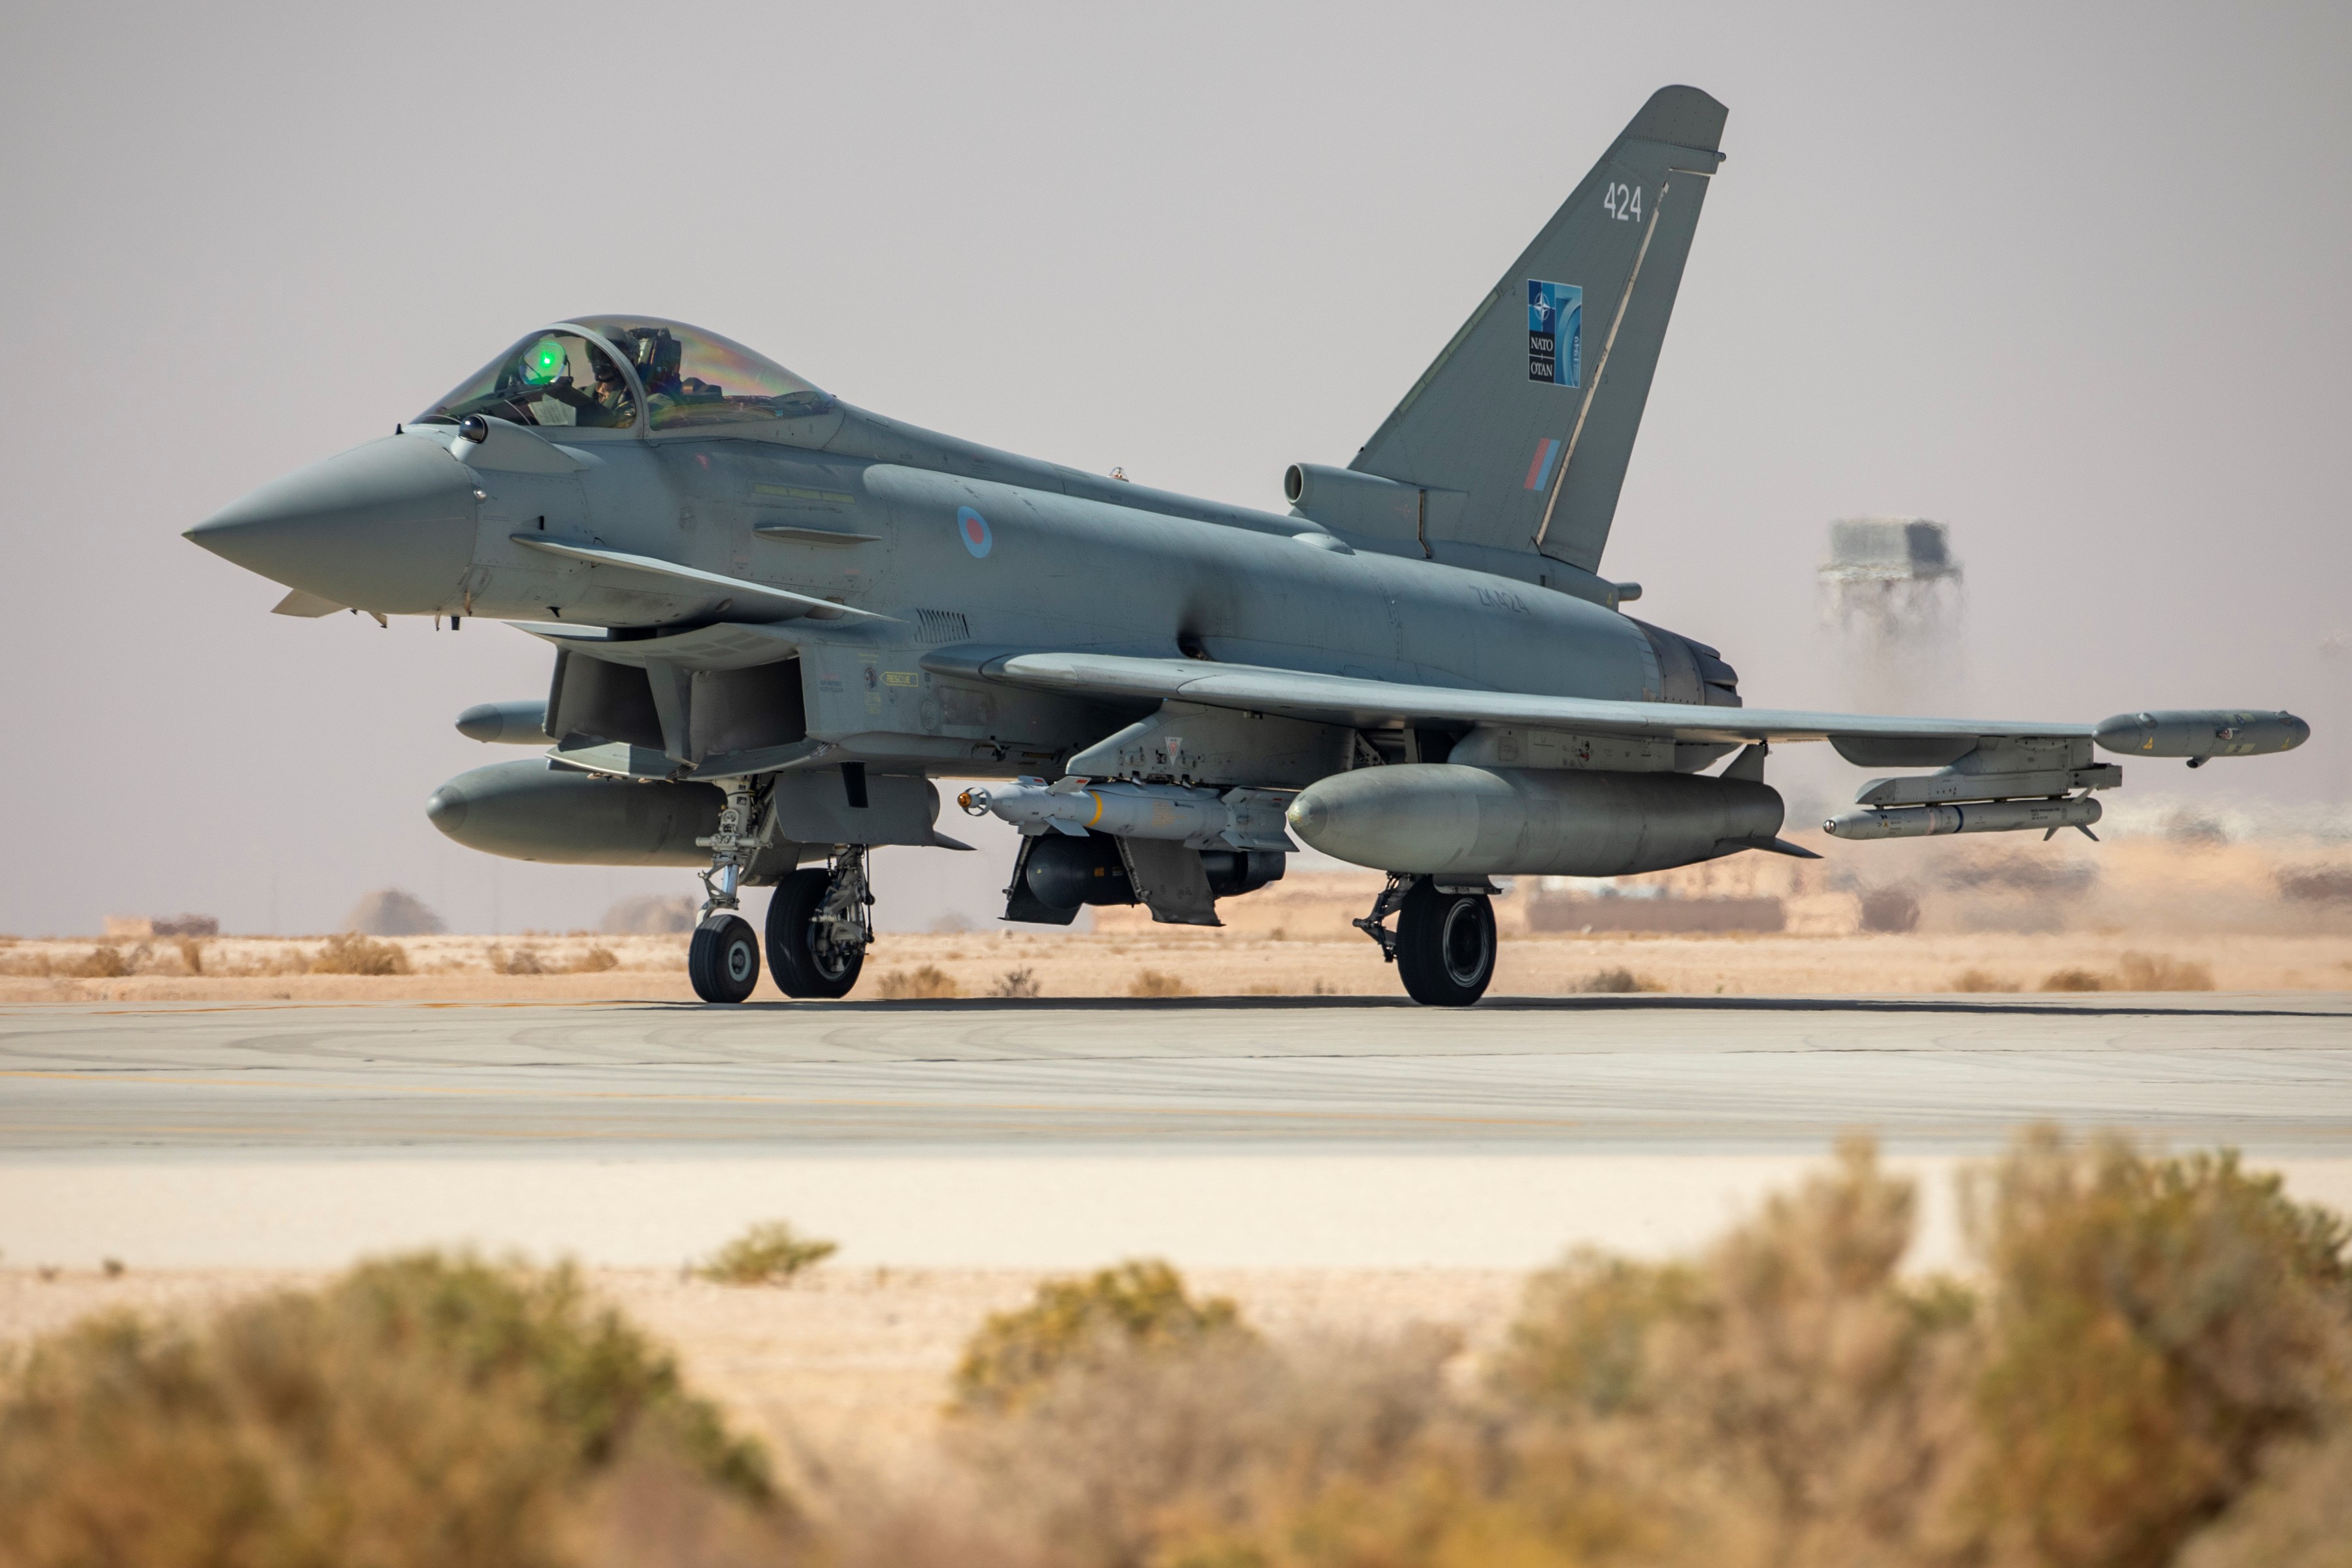 Typhoon on the runway in Oman.